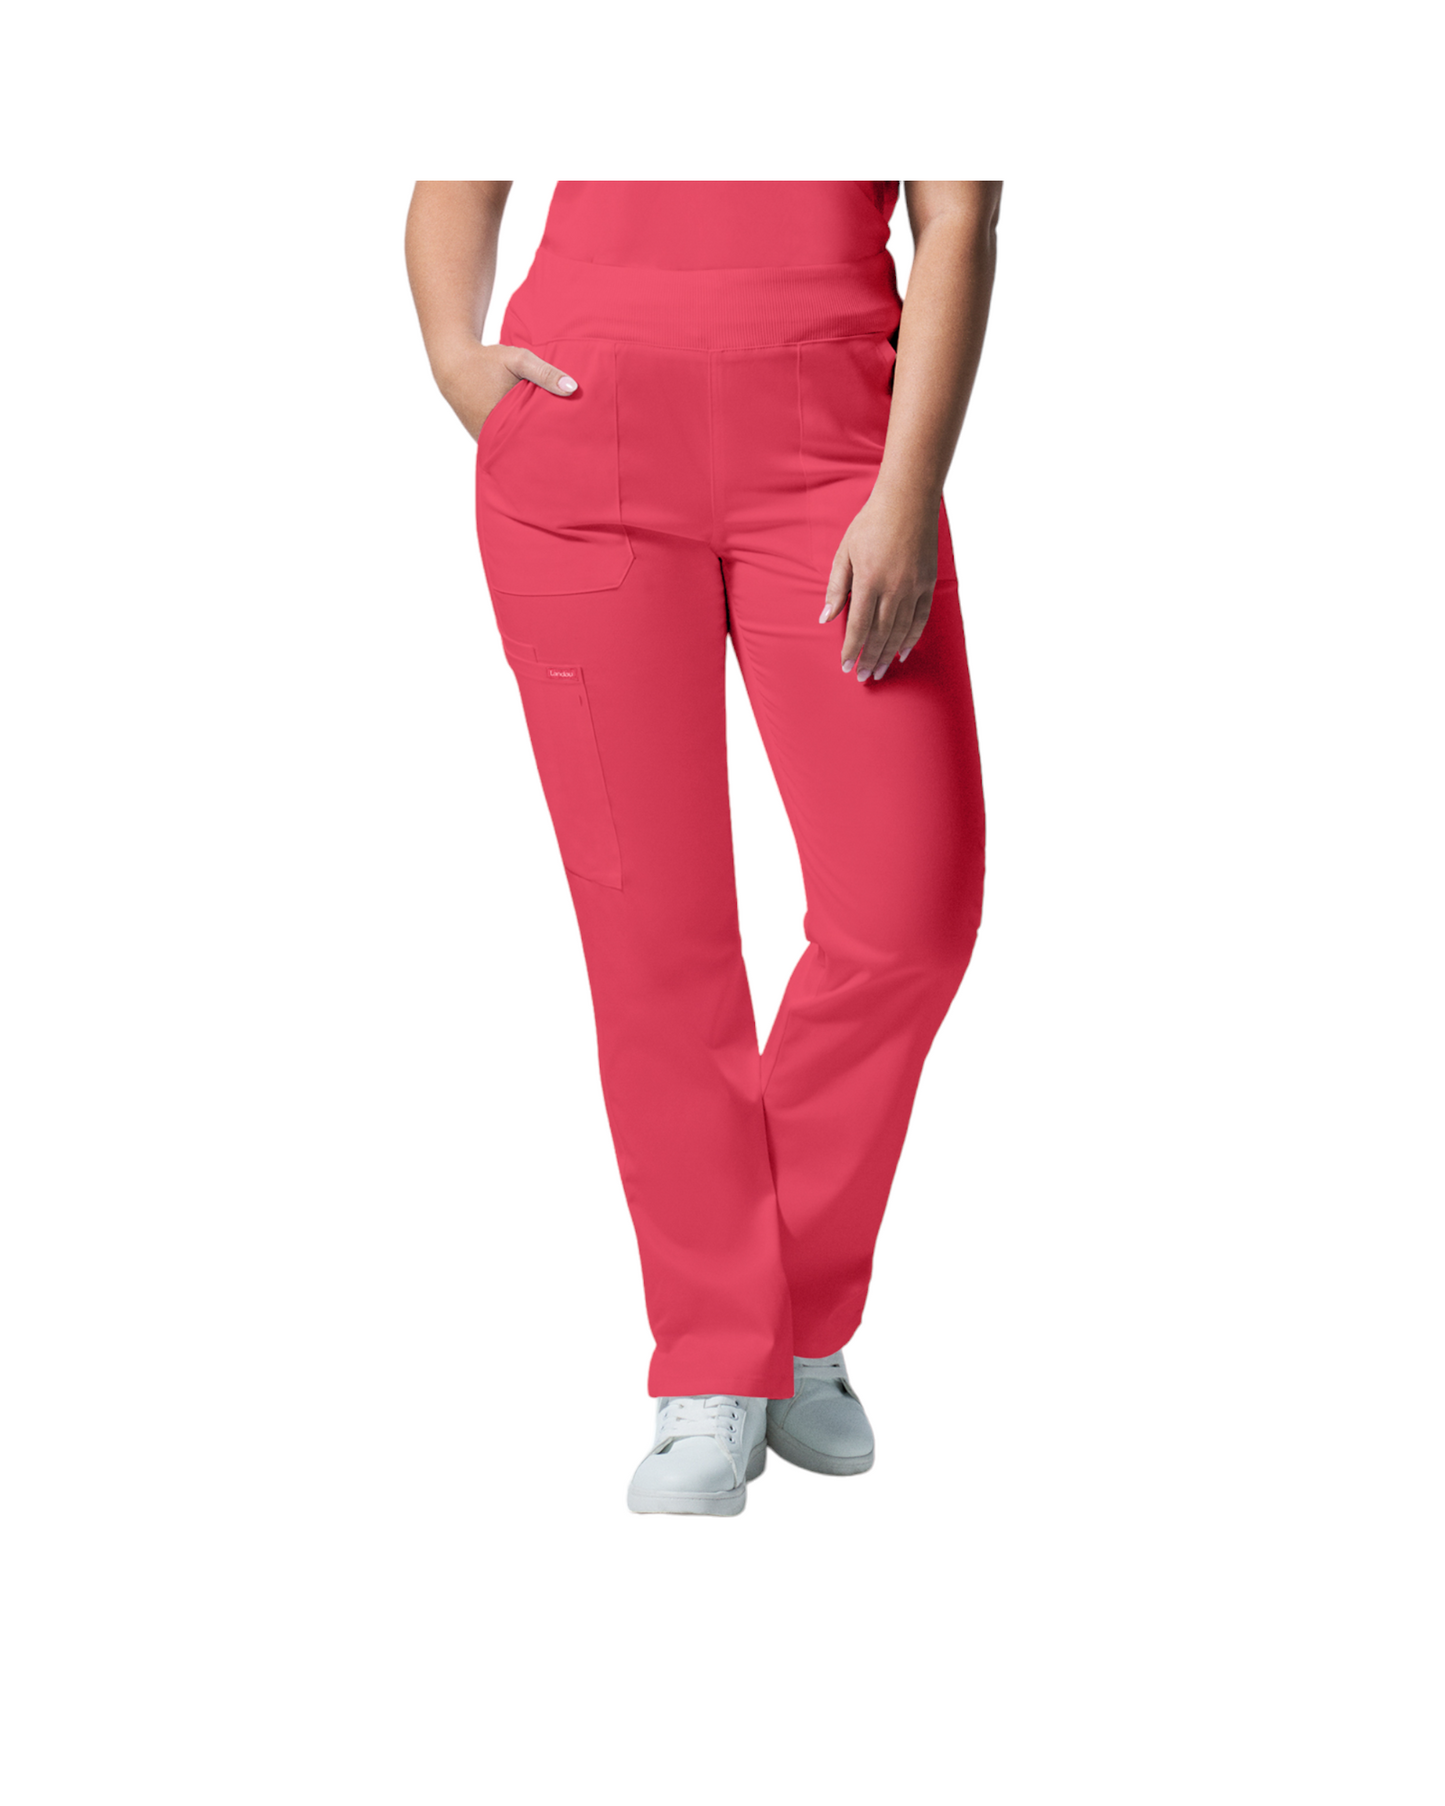 Pantalons 6 poches pour femmes Landau Proflex #LB405 OS couleur Corail